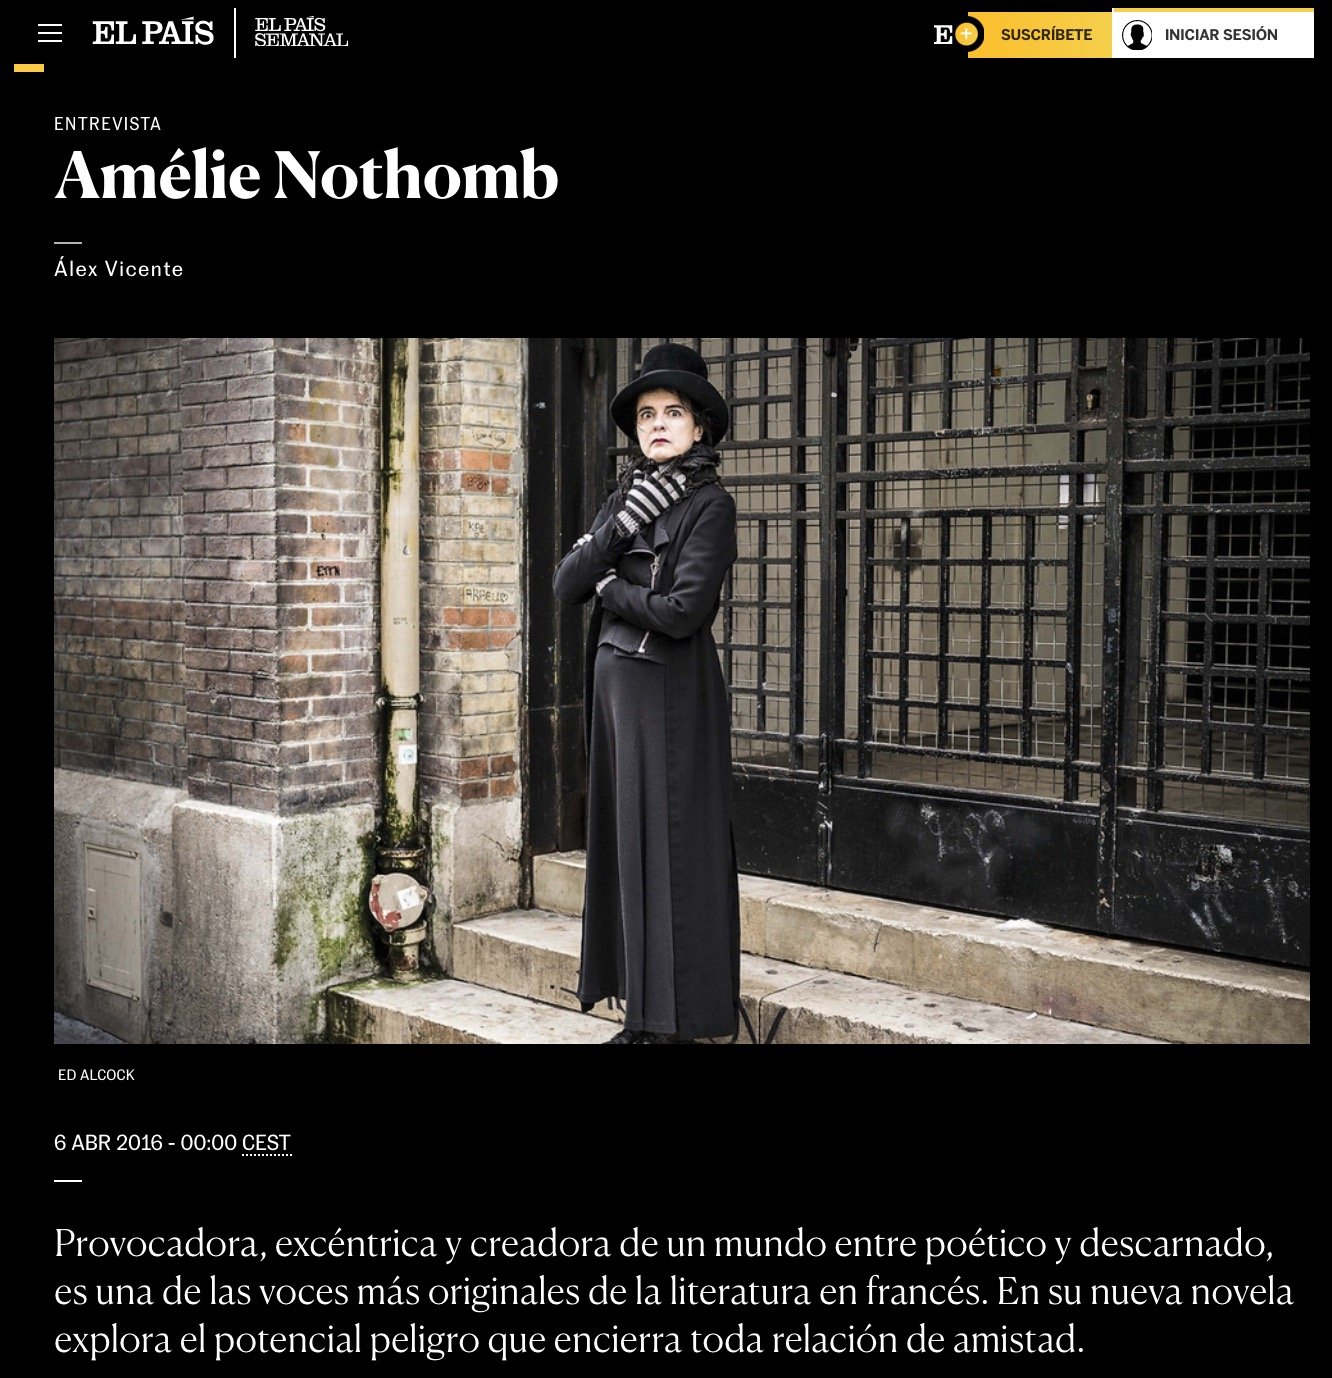 Estupor y temblores de Amélie Nothomb